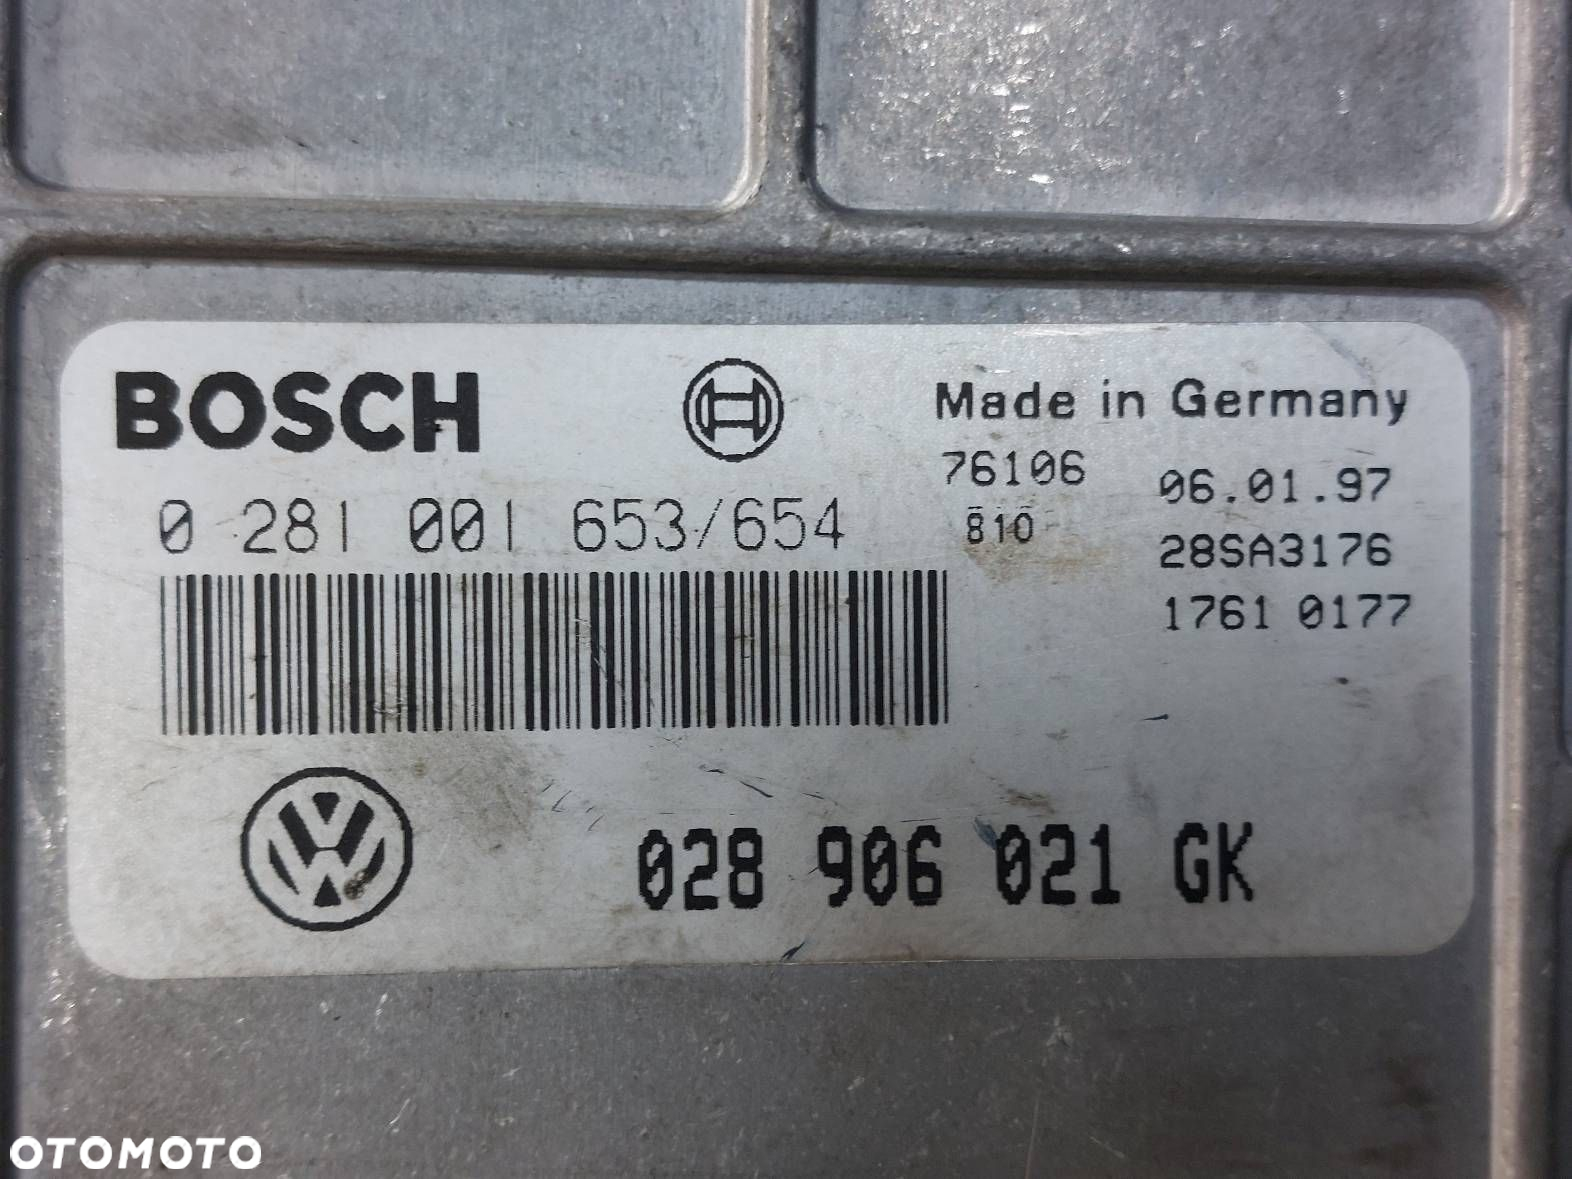 ZESTAW STARTOWY VW PASSAT B5 1.9 TDI 028906021GK - 2